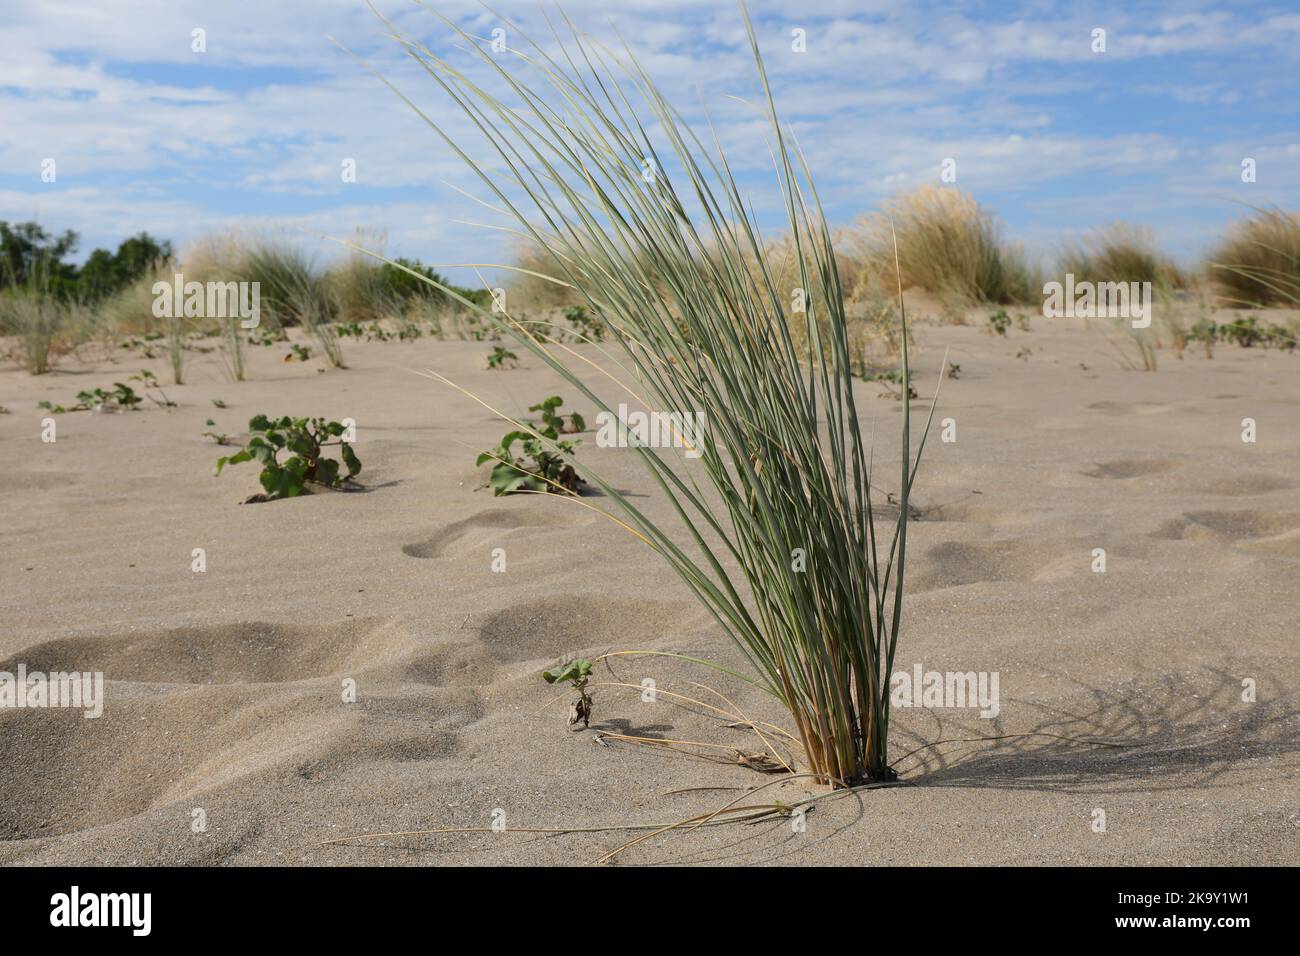 bush d'herbe qui pousse sur une dune de sable malgré la sécheresse du sol Banque D'Images